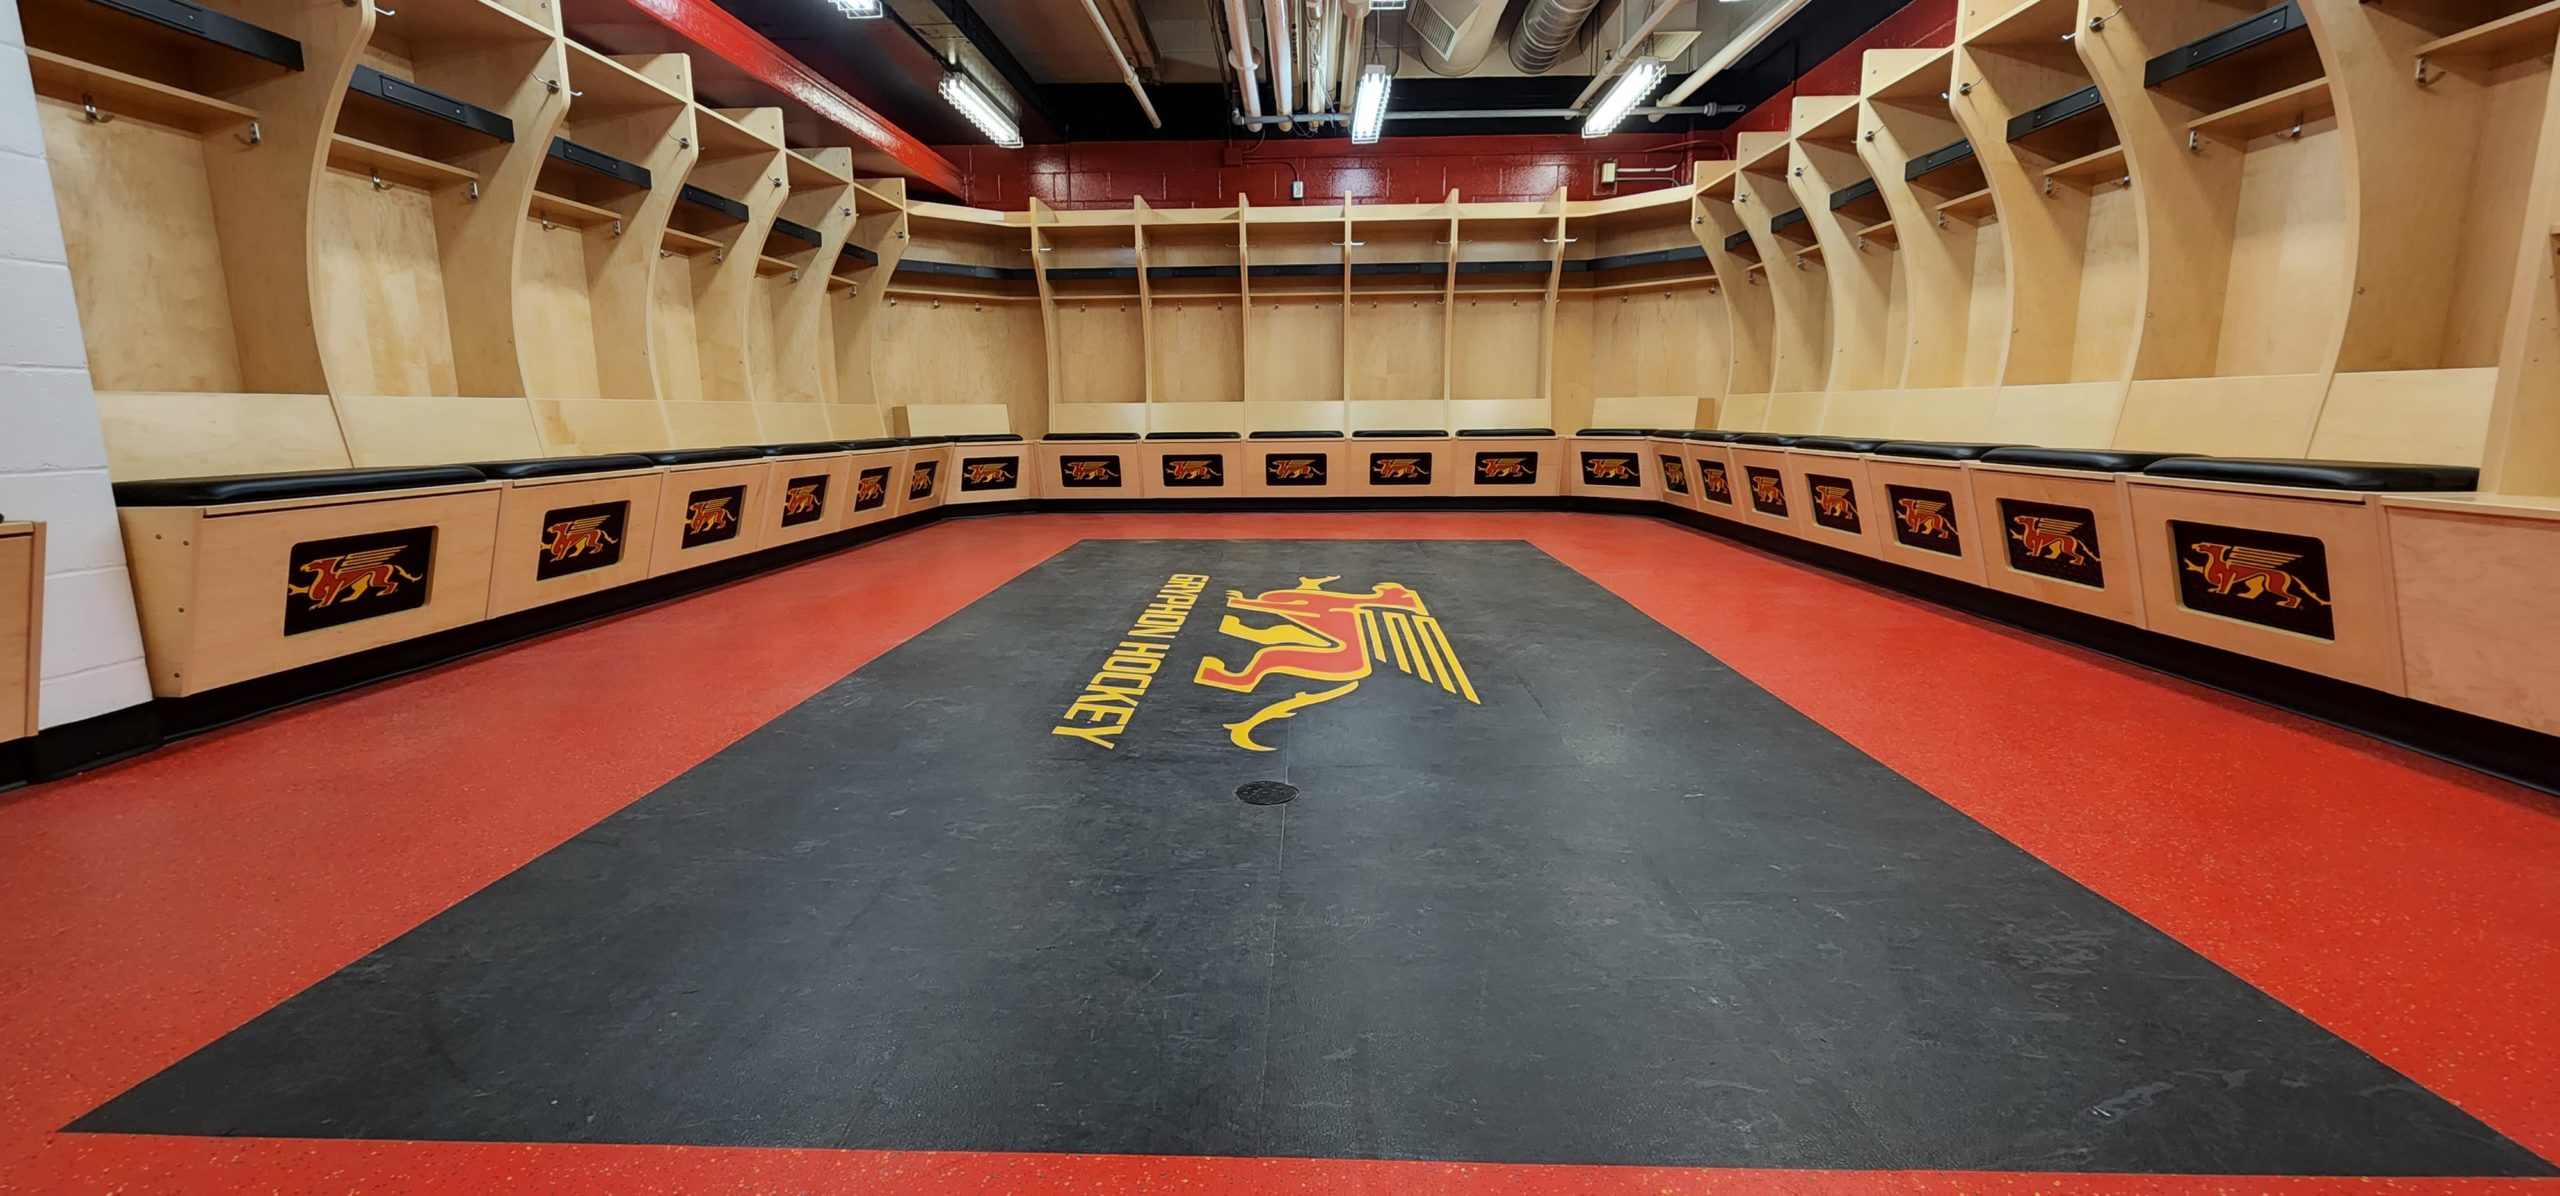 Hockey Locker Room - Guelph University